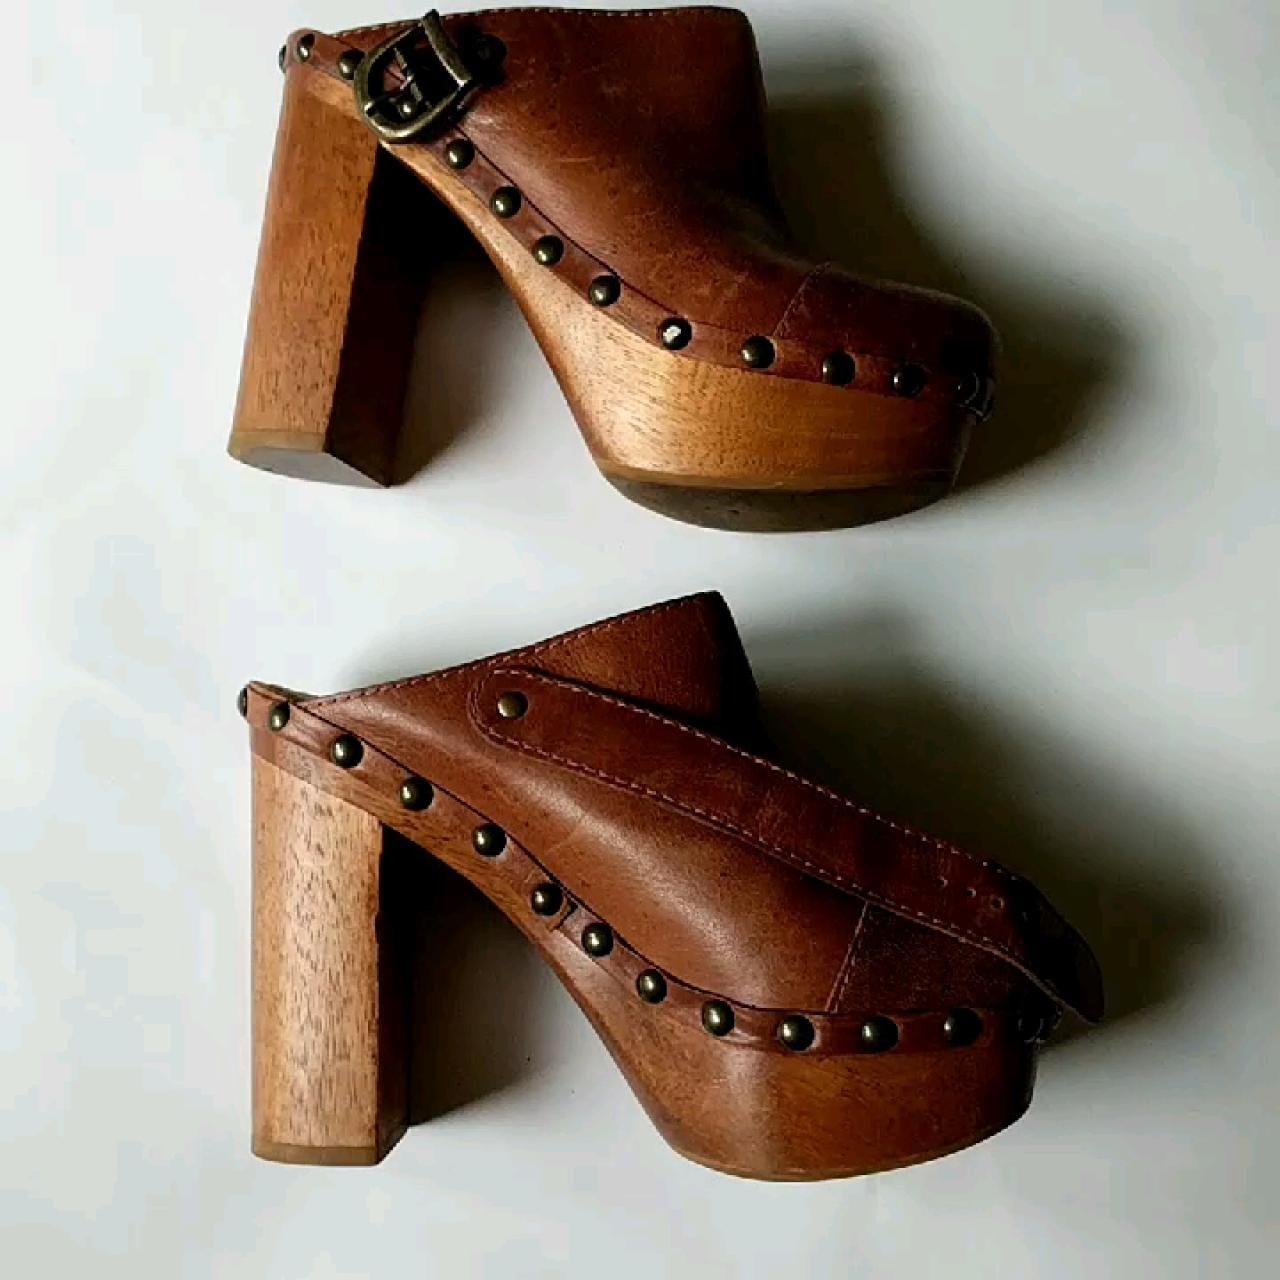 wooden heel clogs